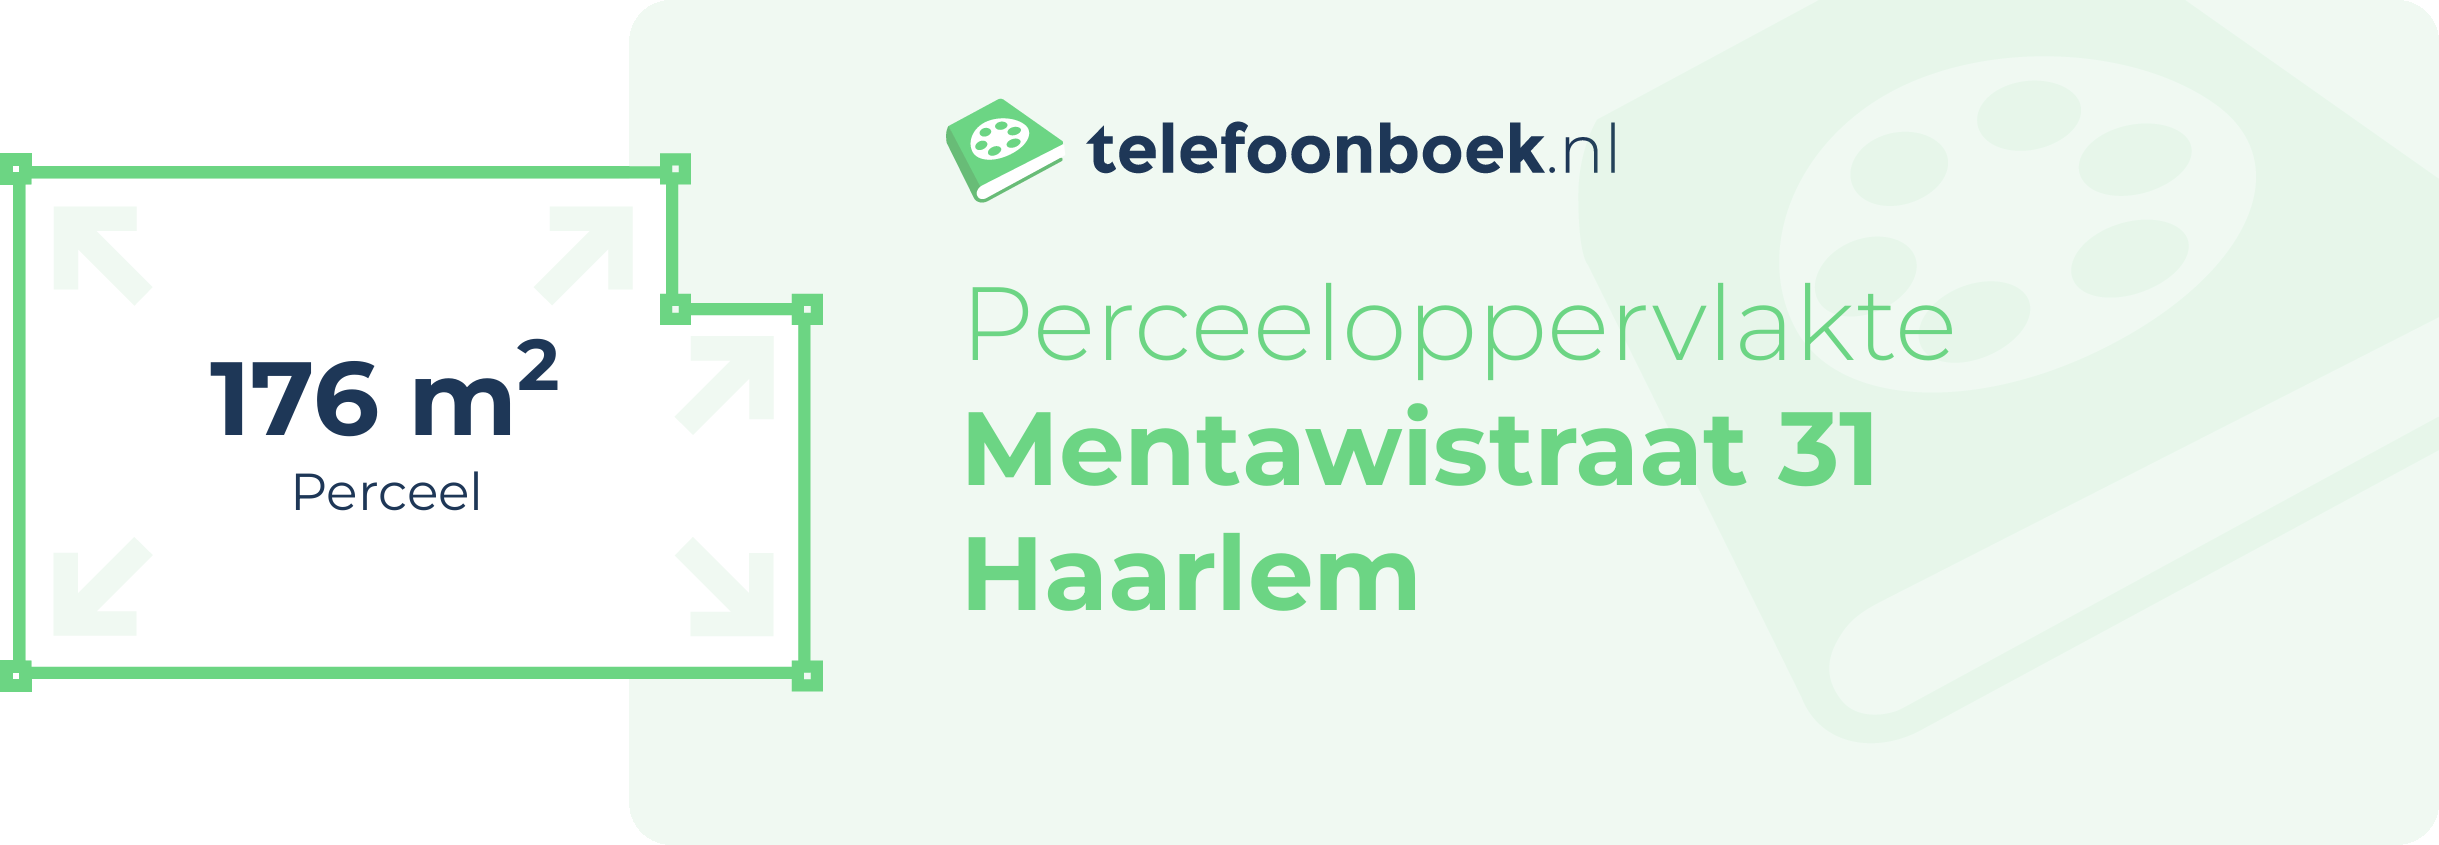 Perceeloppervlakte Mentawistraat 31 Haarlem